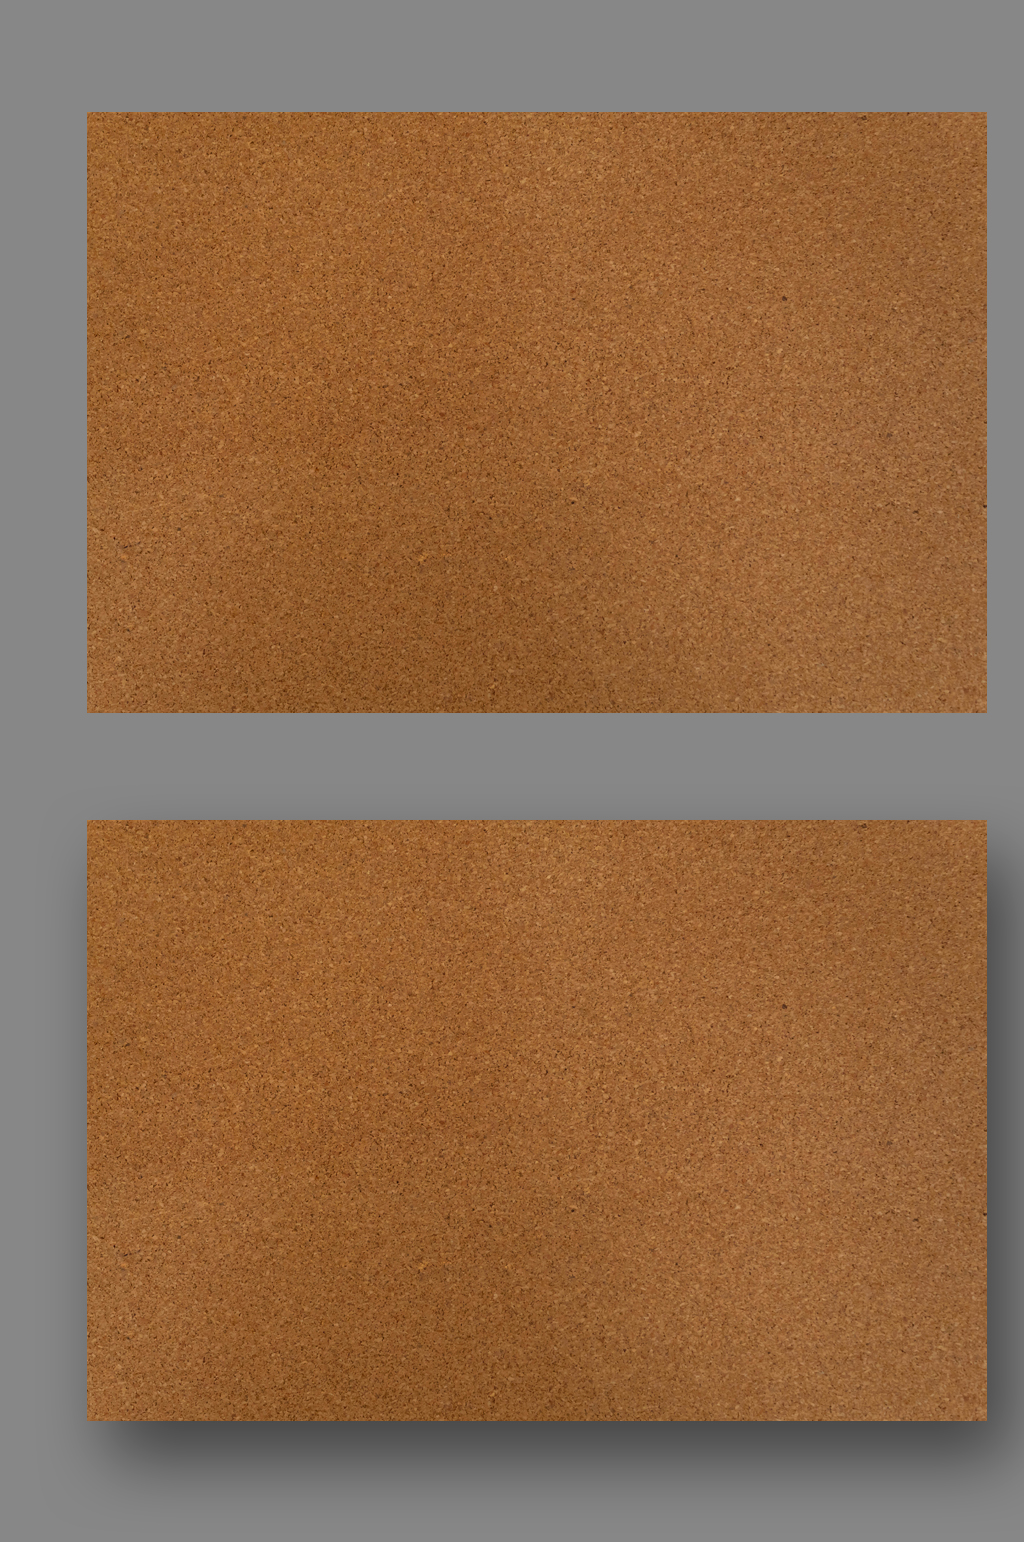 棕色砖墙底纹装饰背景素材